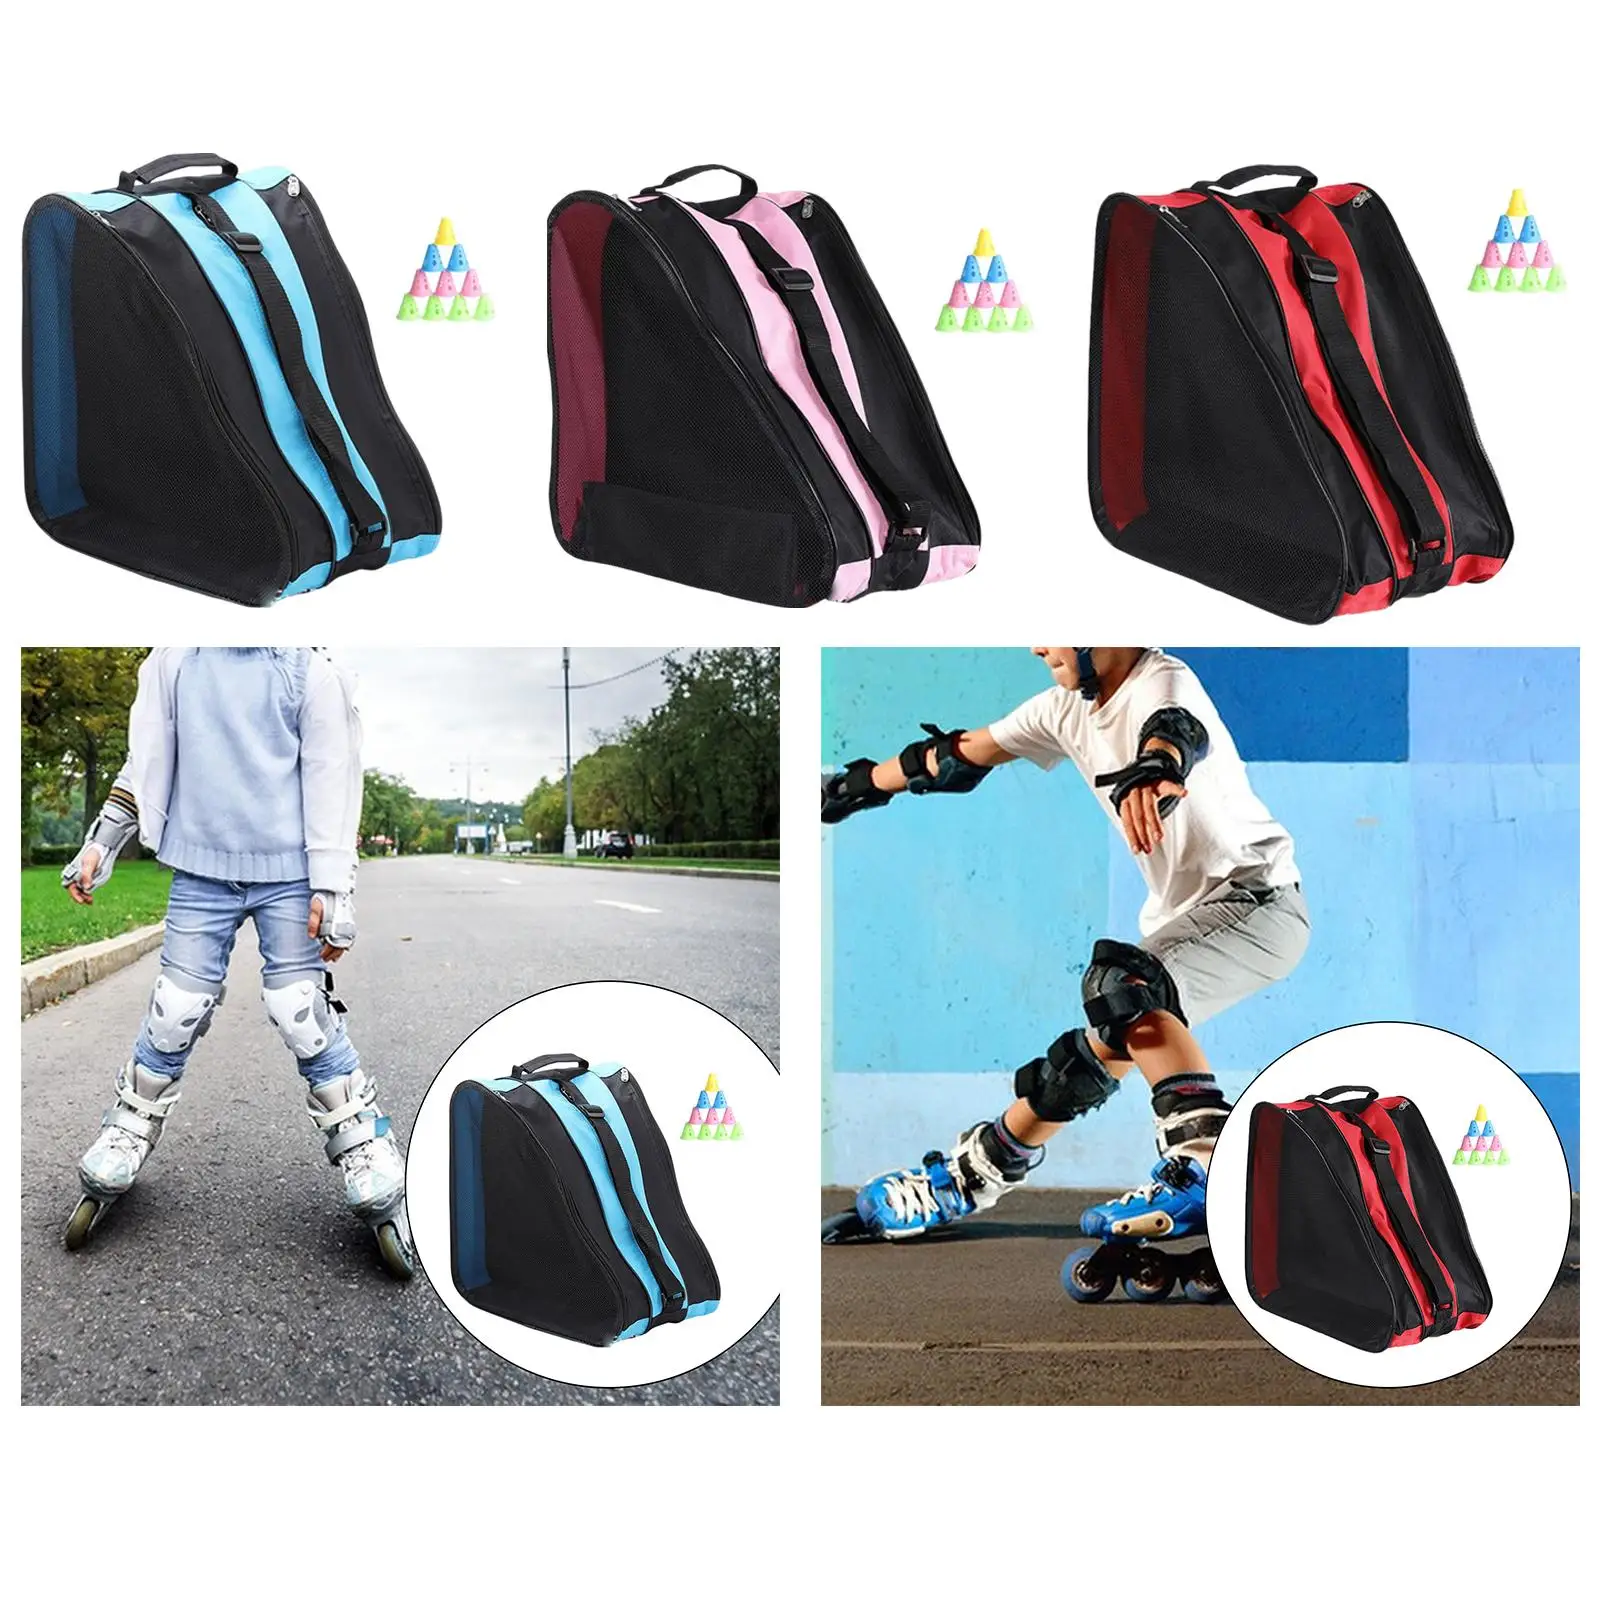 Roller Skate Bag Breathable Ice Skate Bag Heavy Duty Adjustable Shoulder Strap and Top Handle, Triangle Skate Bag for Boys Girls